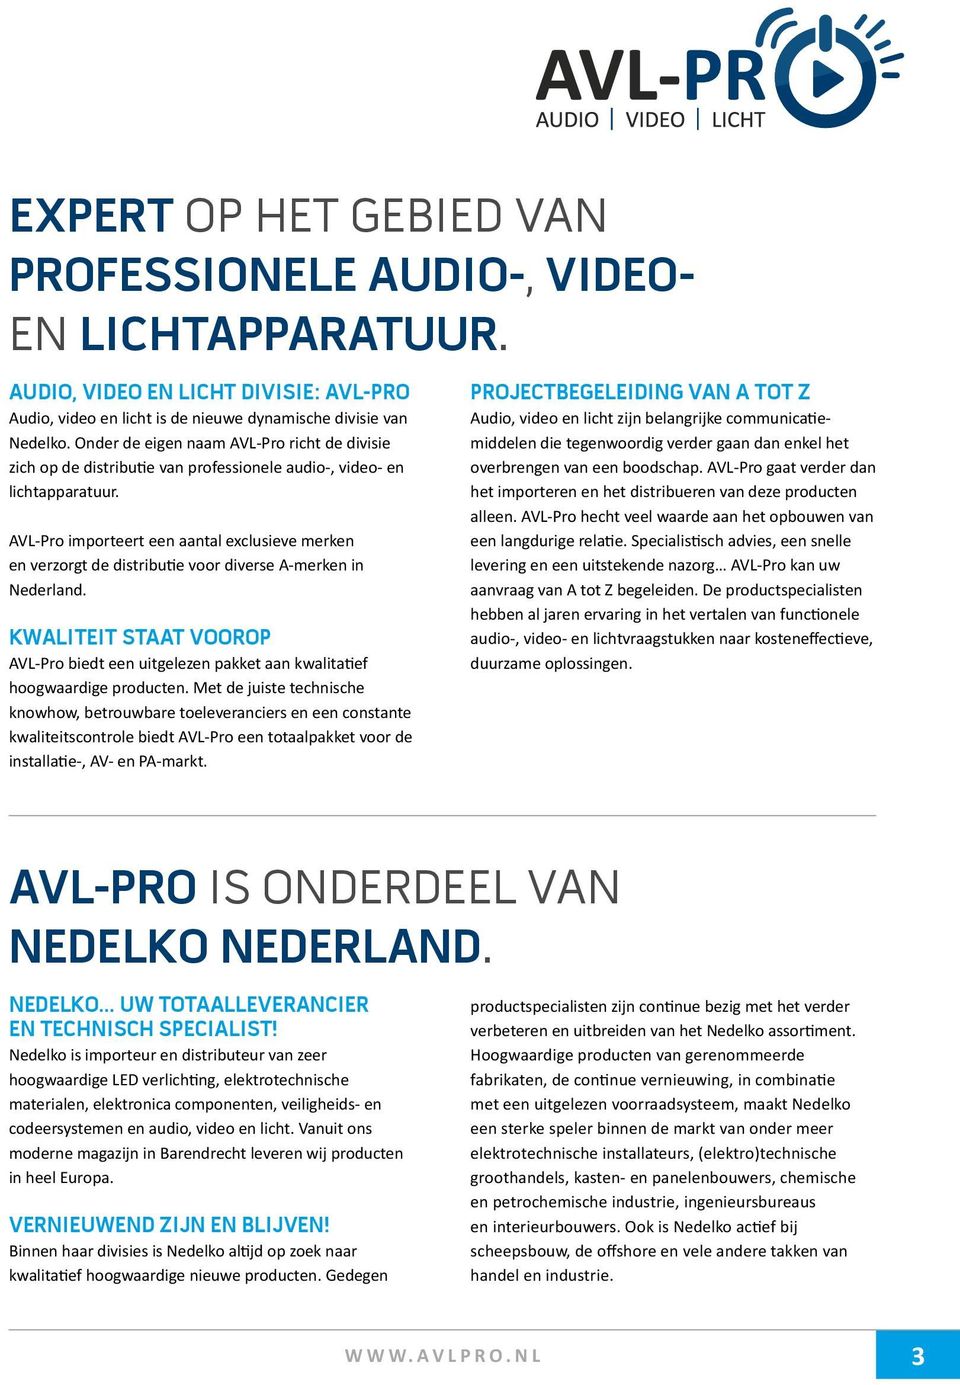 AVL-Pro importeert een aantal exclusieve merken en verzorgt de distributie voor diverse A-merken in Nederland.